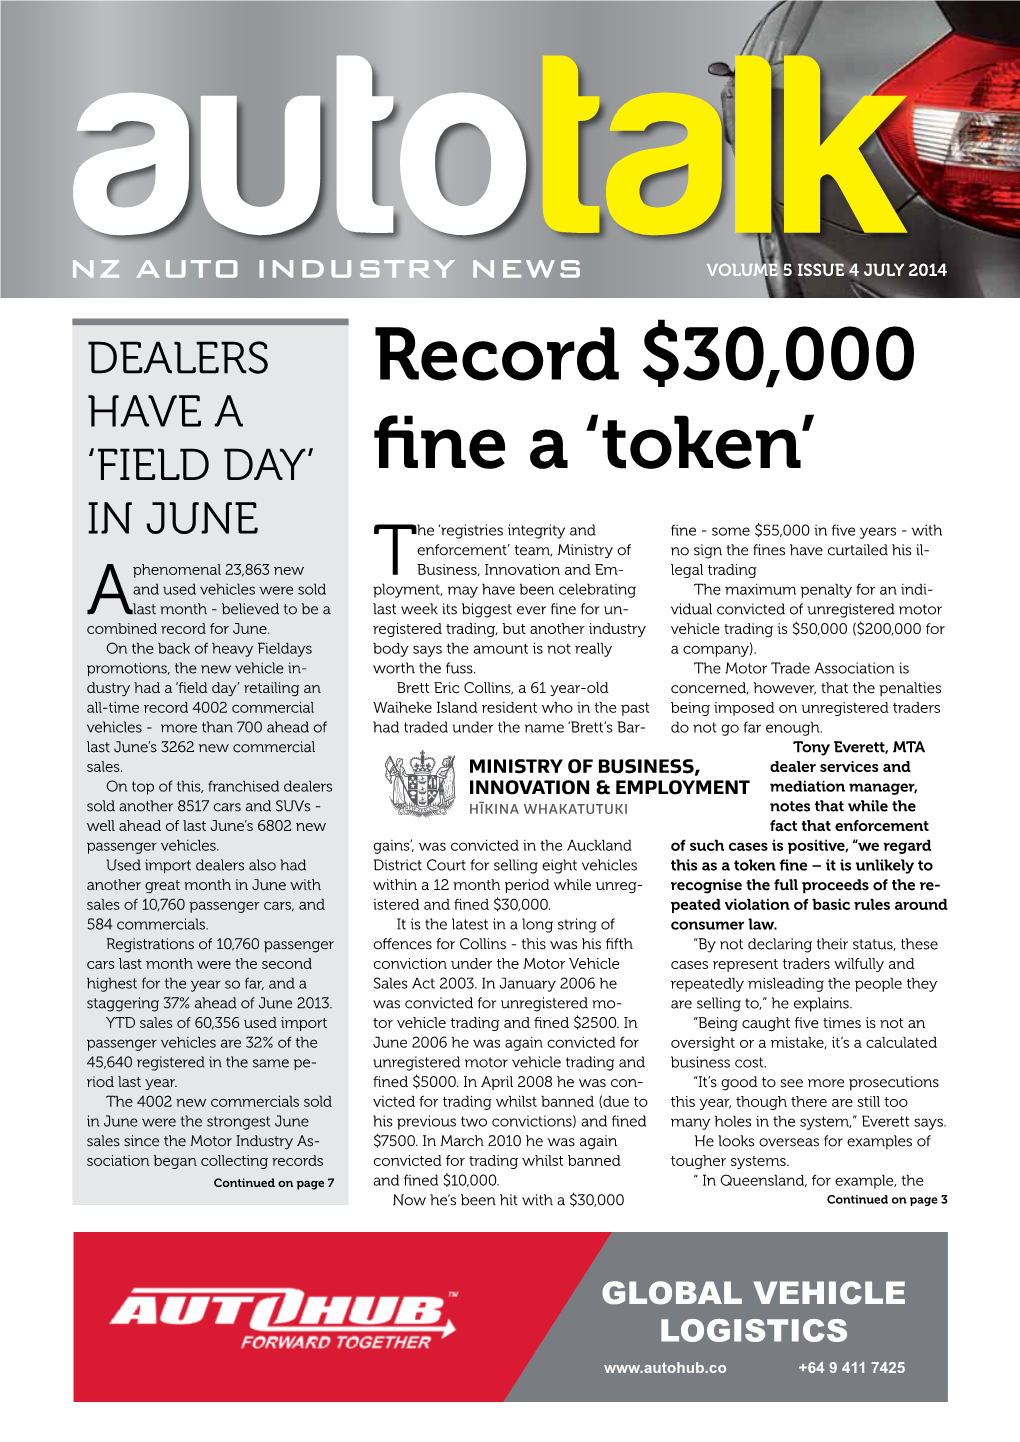 Record $30,000 Fine a 'Token'